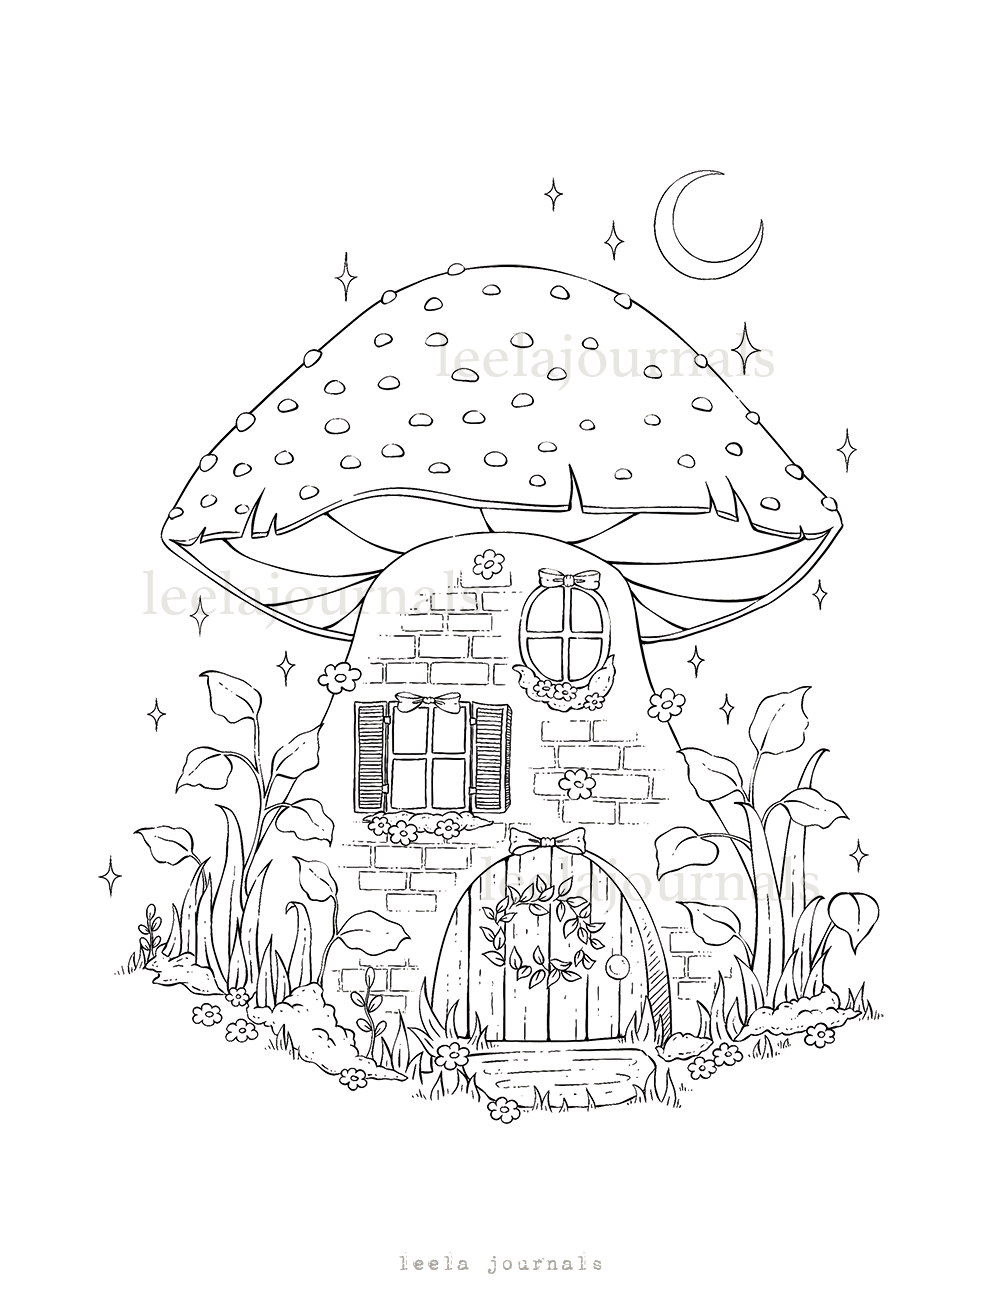 Kawaii Mushrooms Coloring Book Printable PDF Instant Digital 